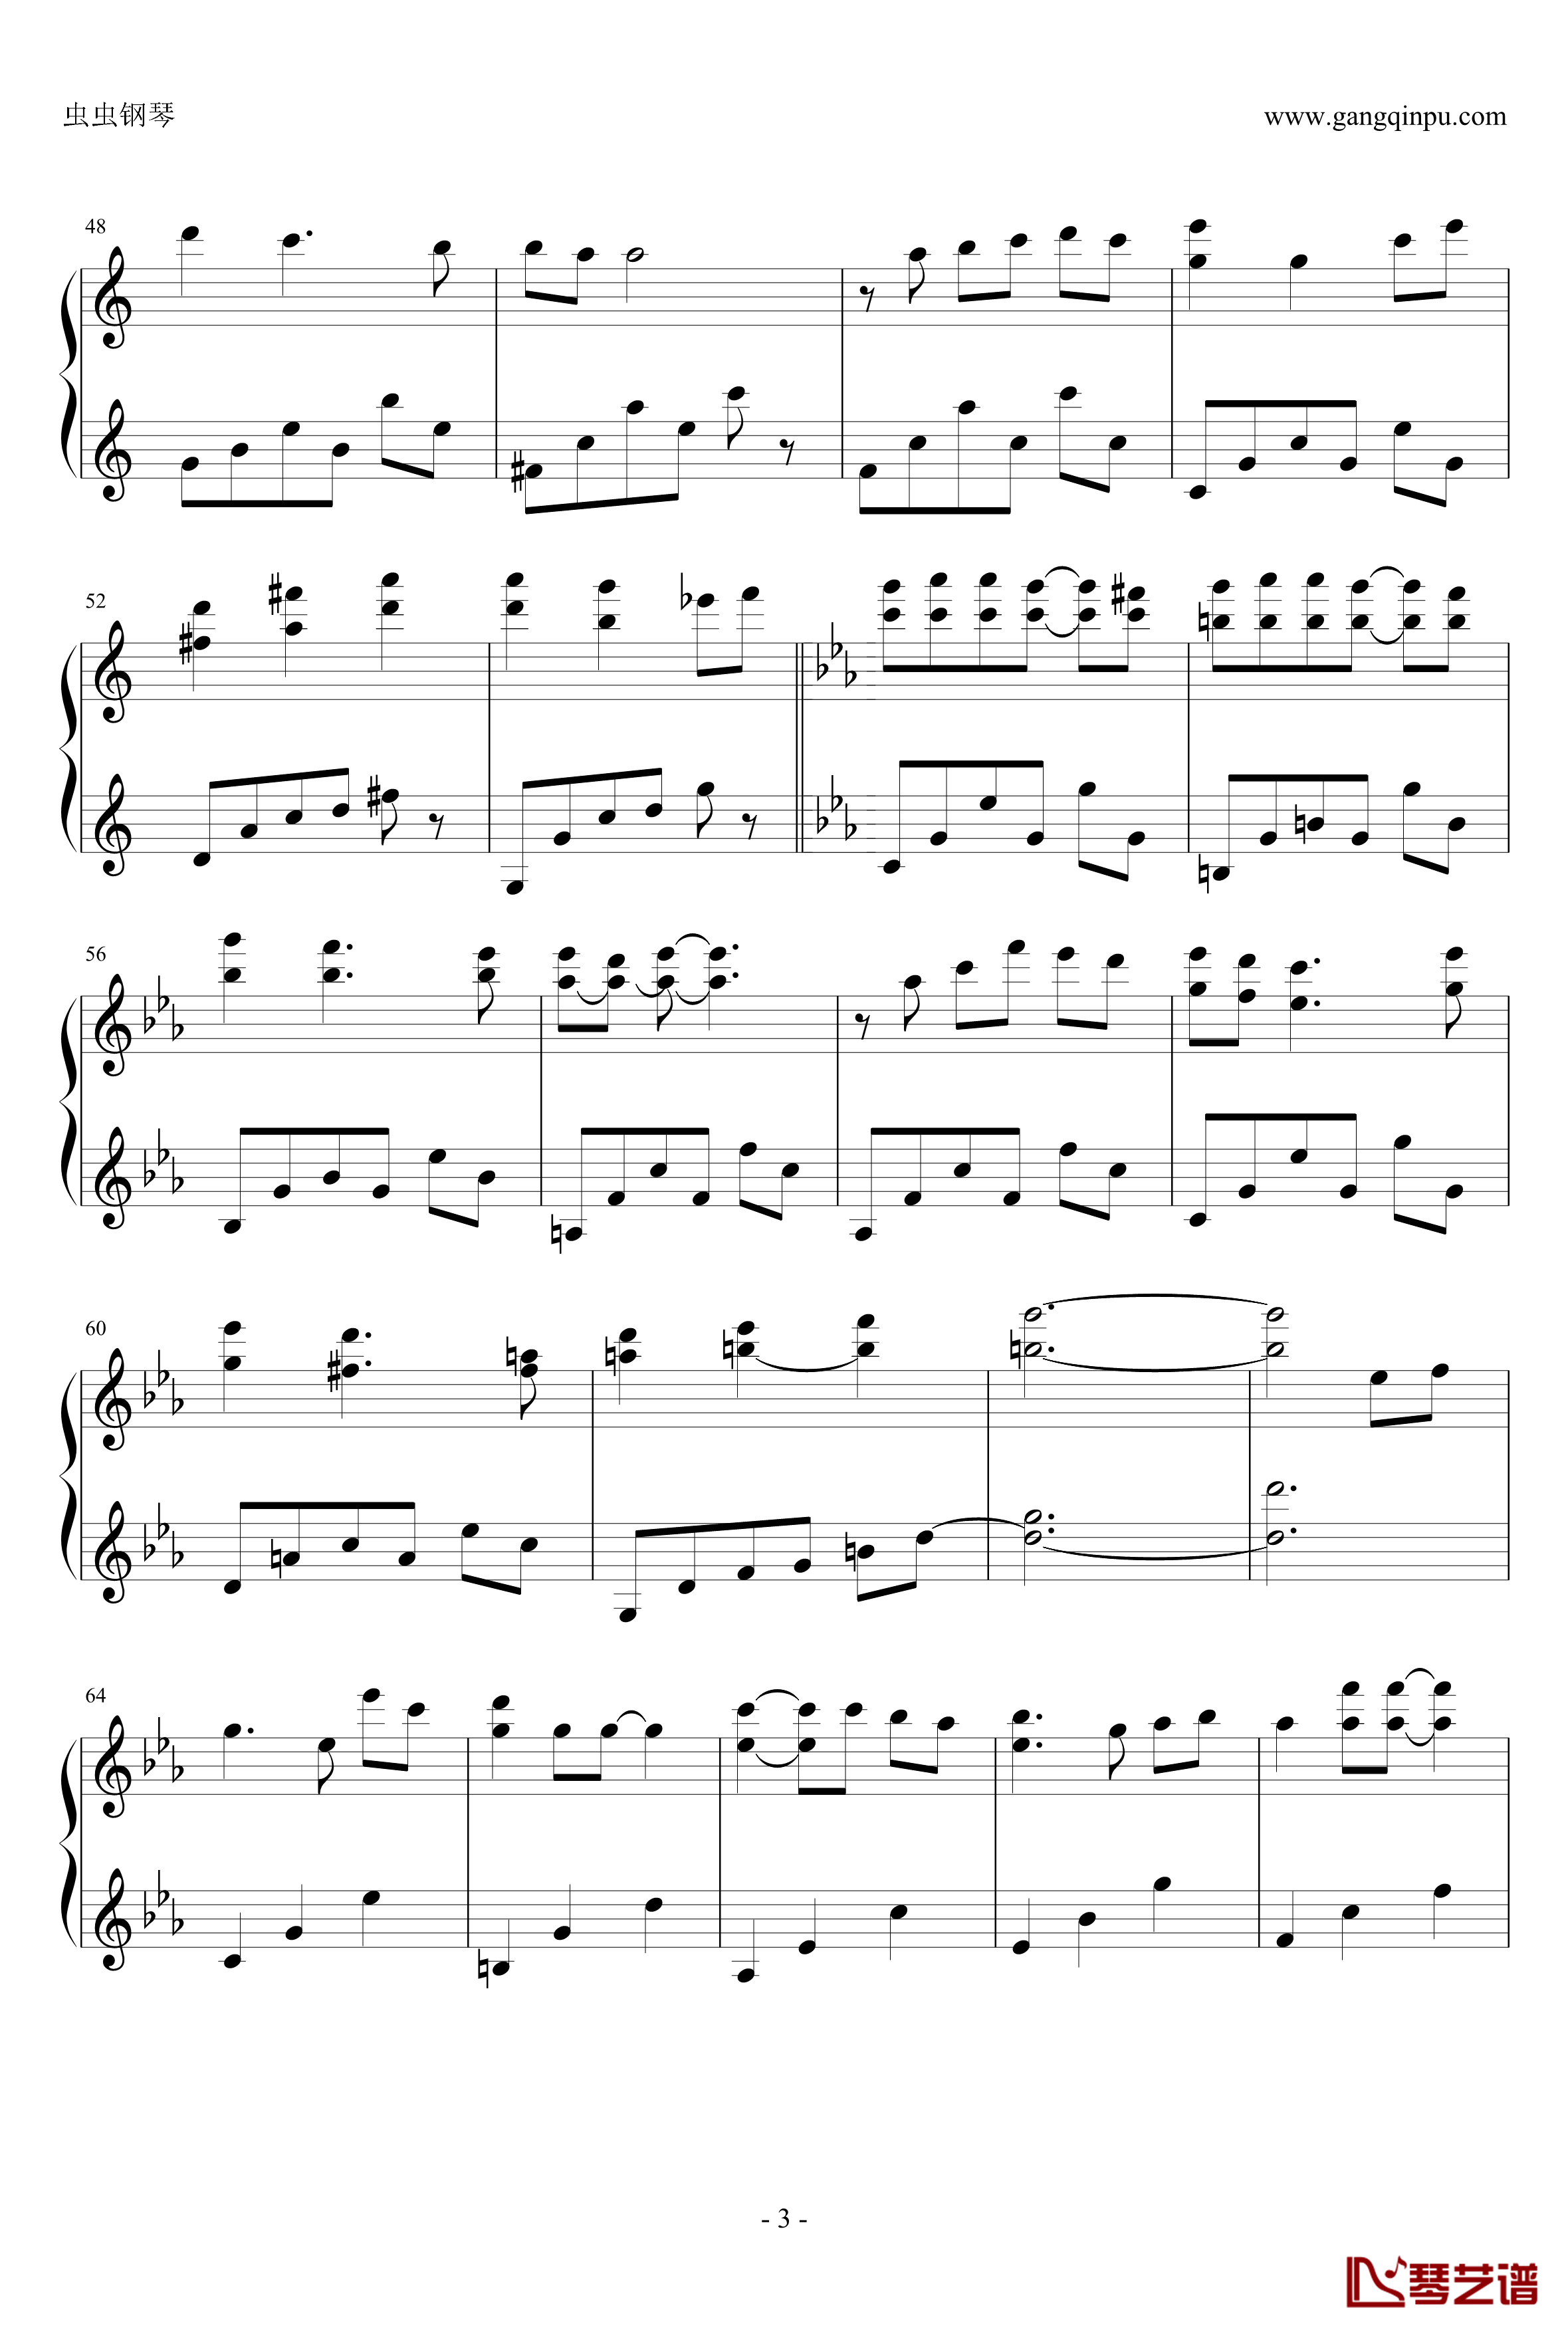 微光钢琴谱-Vega-2014-5-24-Ku.Klux.Klan3